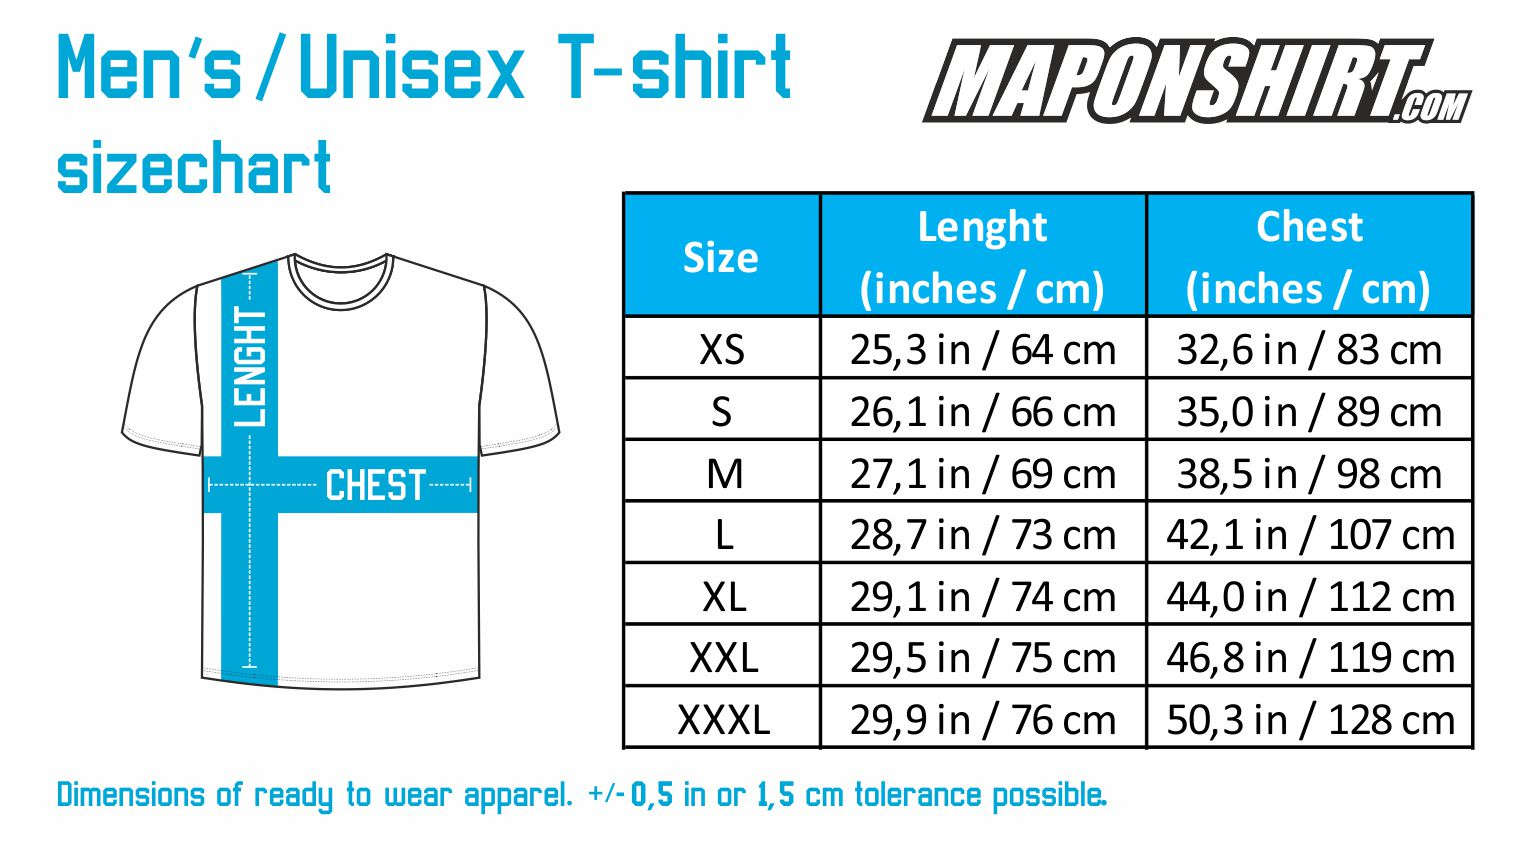 European Standard T Shirt Size Chart